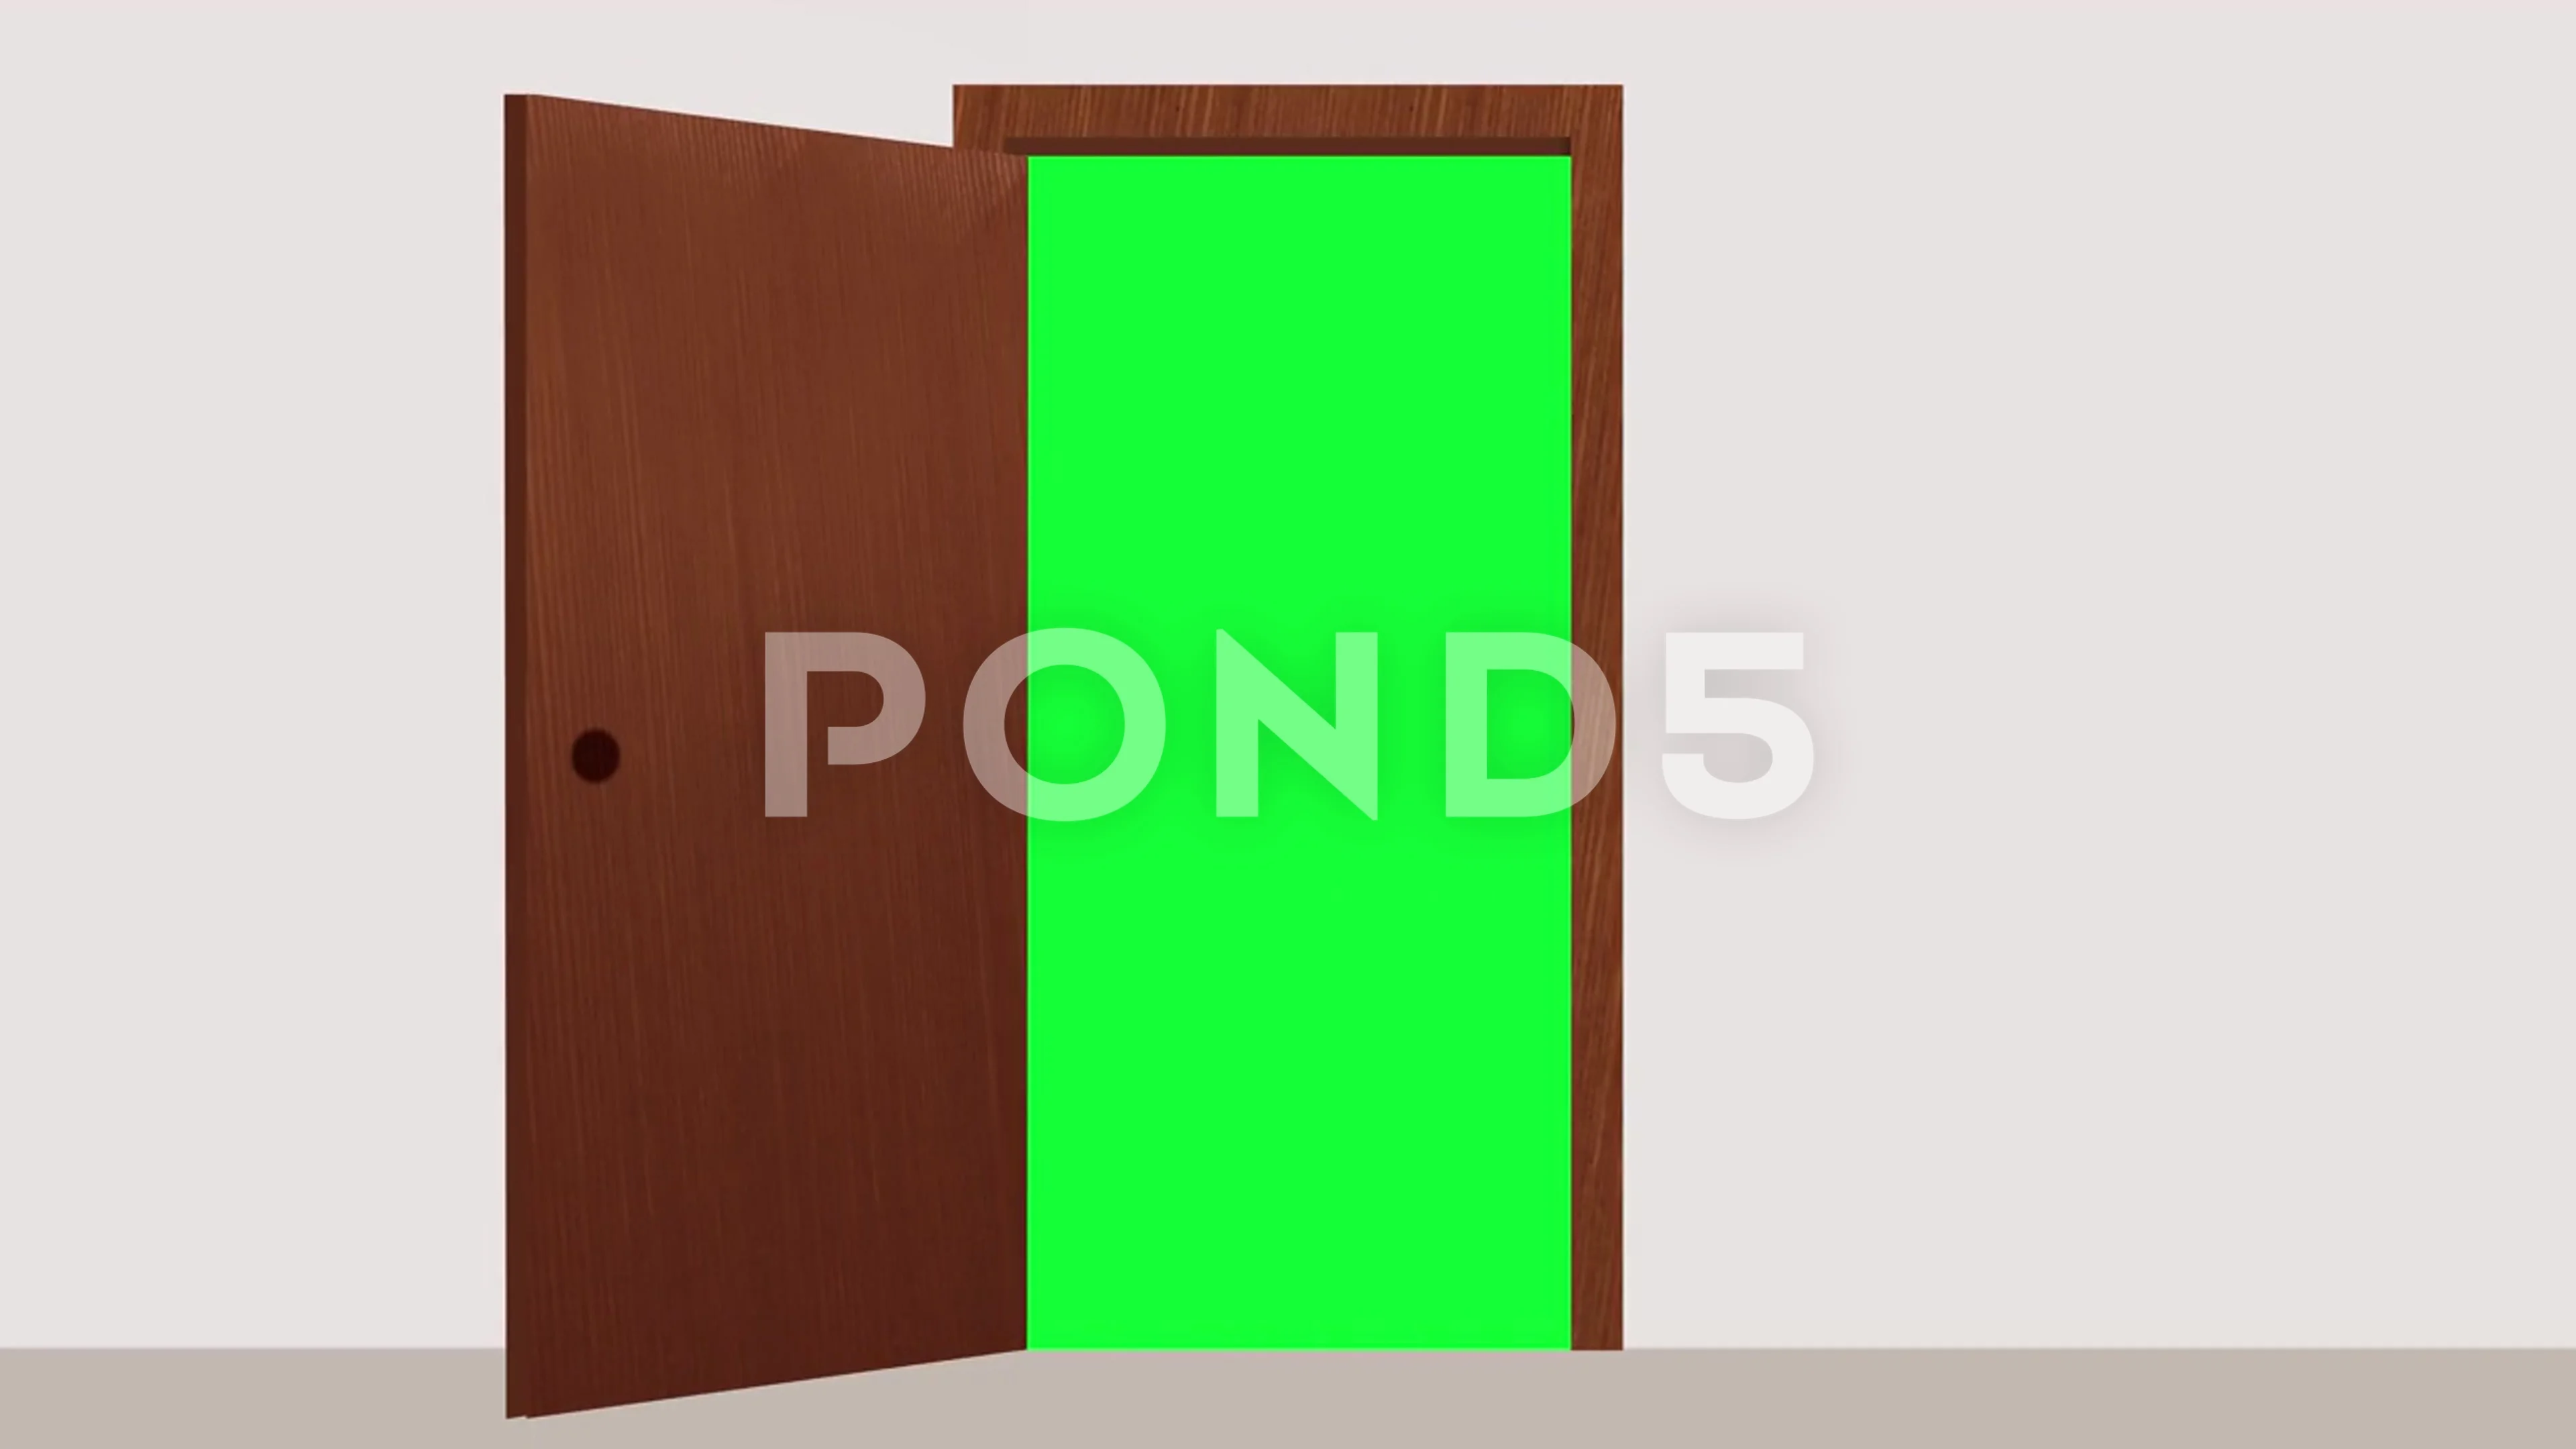 Cánh cửa gỗ với Green screen sẽ đưa bạn đến với một thế giới mới, nơi mà bạn có thể thực hiện những ý tưởng đầy sáng tạo của mình. Cùng theo dõi hình ảnh để tìm hiểu thêm về những khả năng mà loại hình này đem lại.